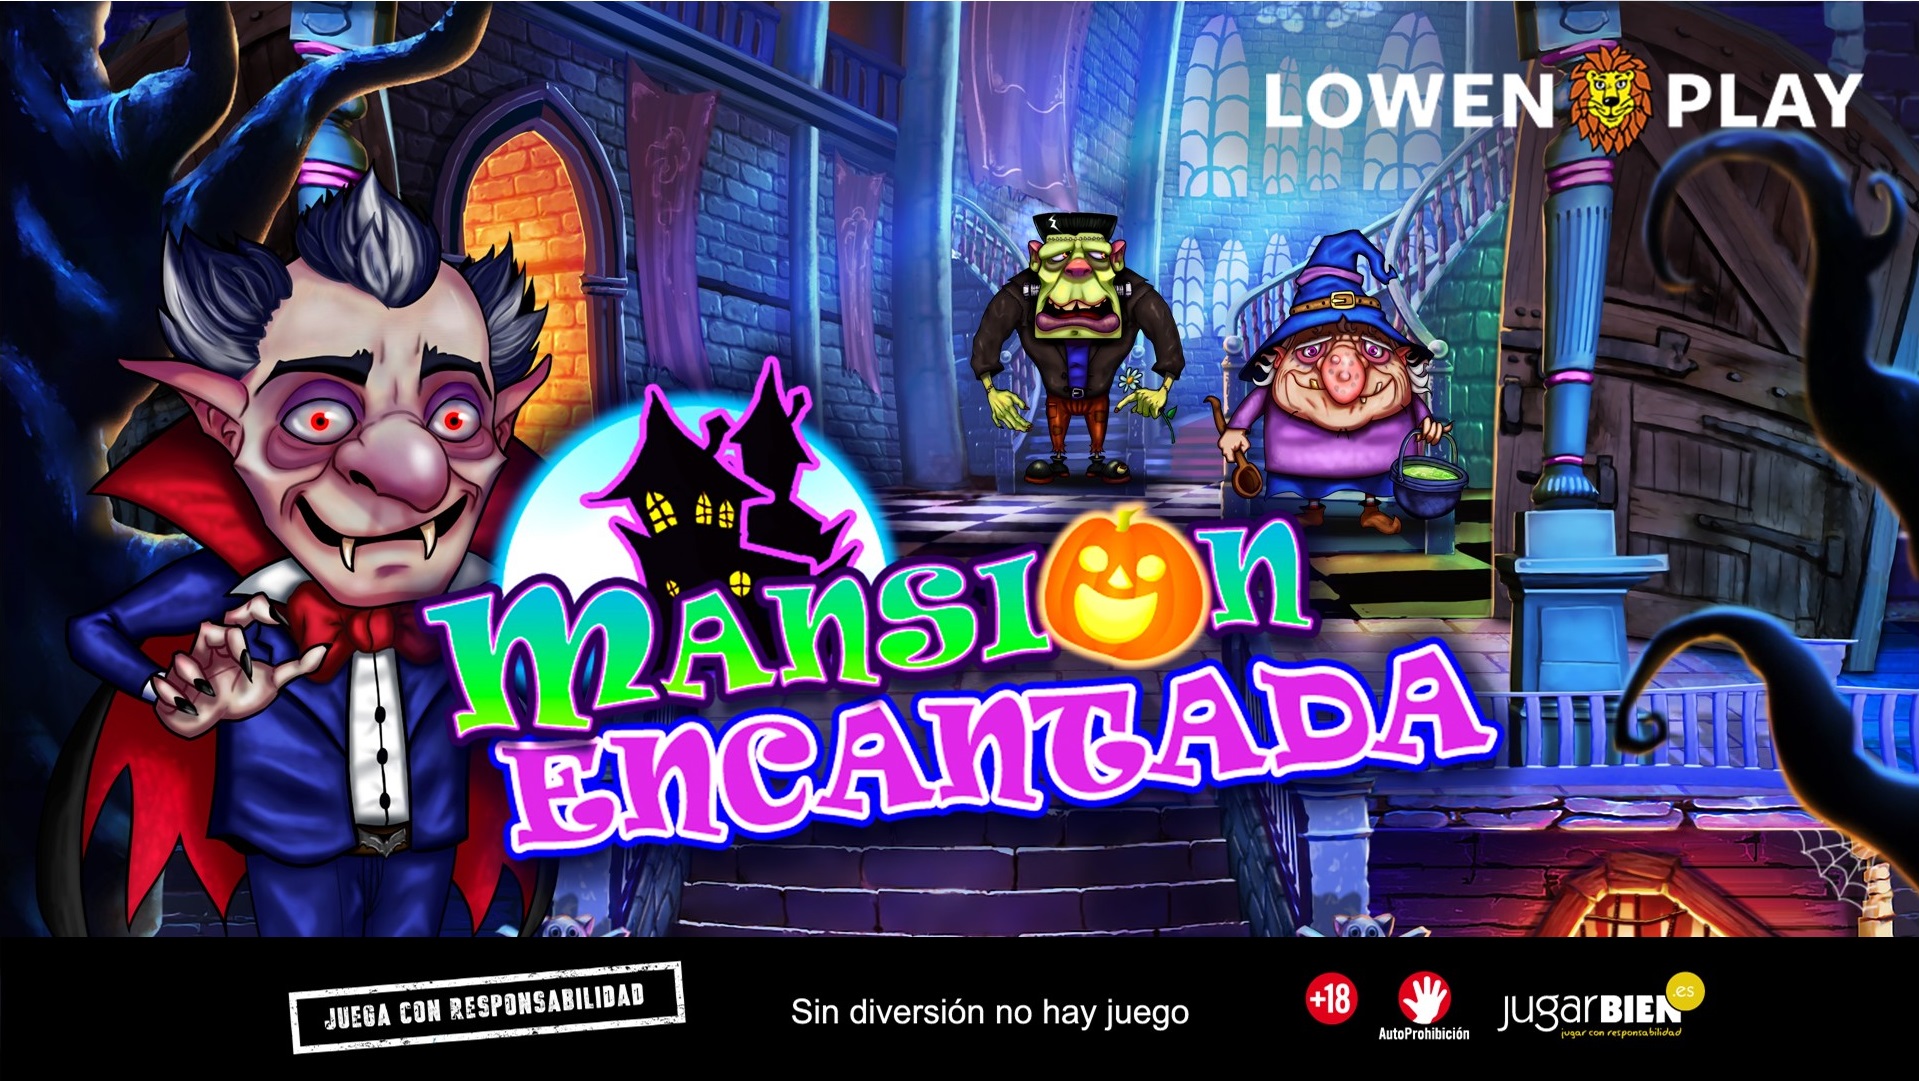 52 lamansion encantada mga legal Disfruta del Halloween más terrorífico y divertido en el casino